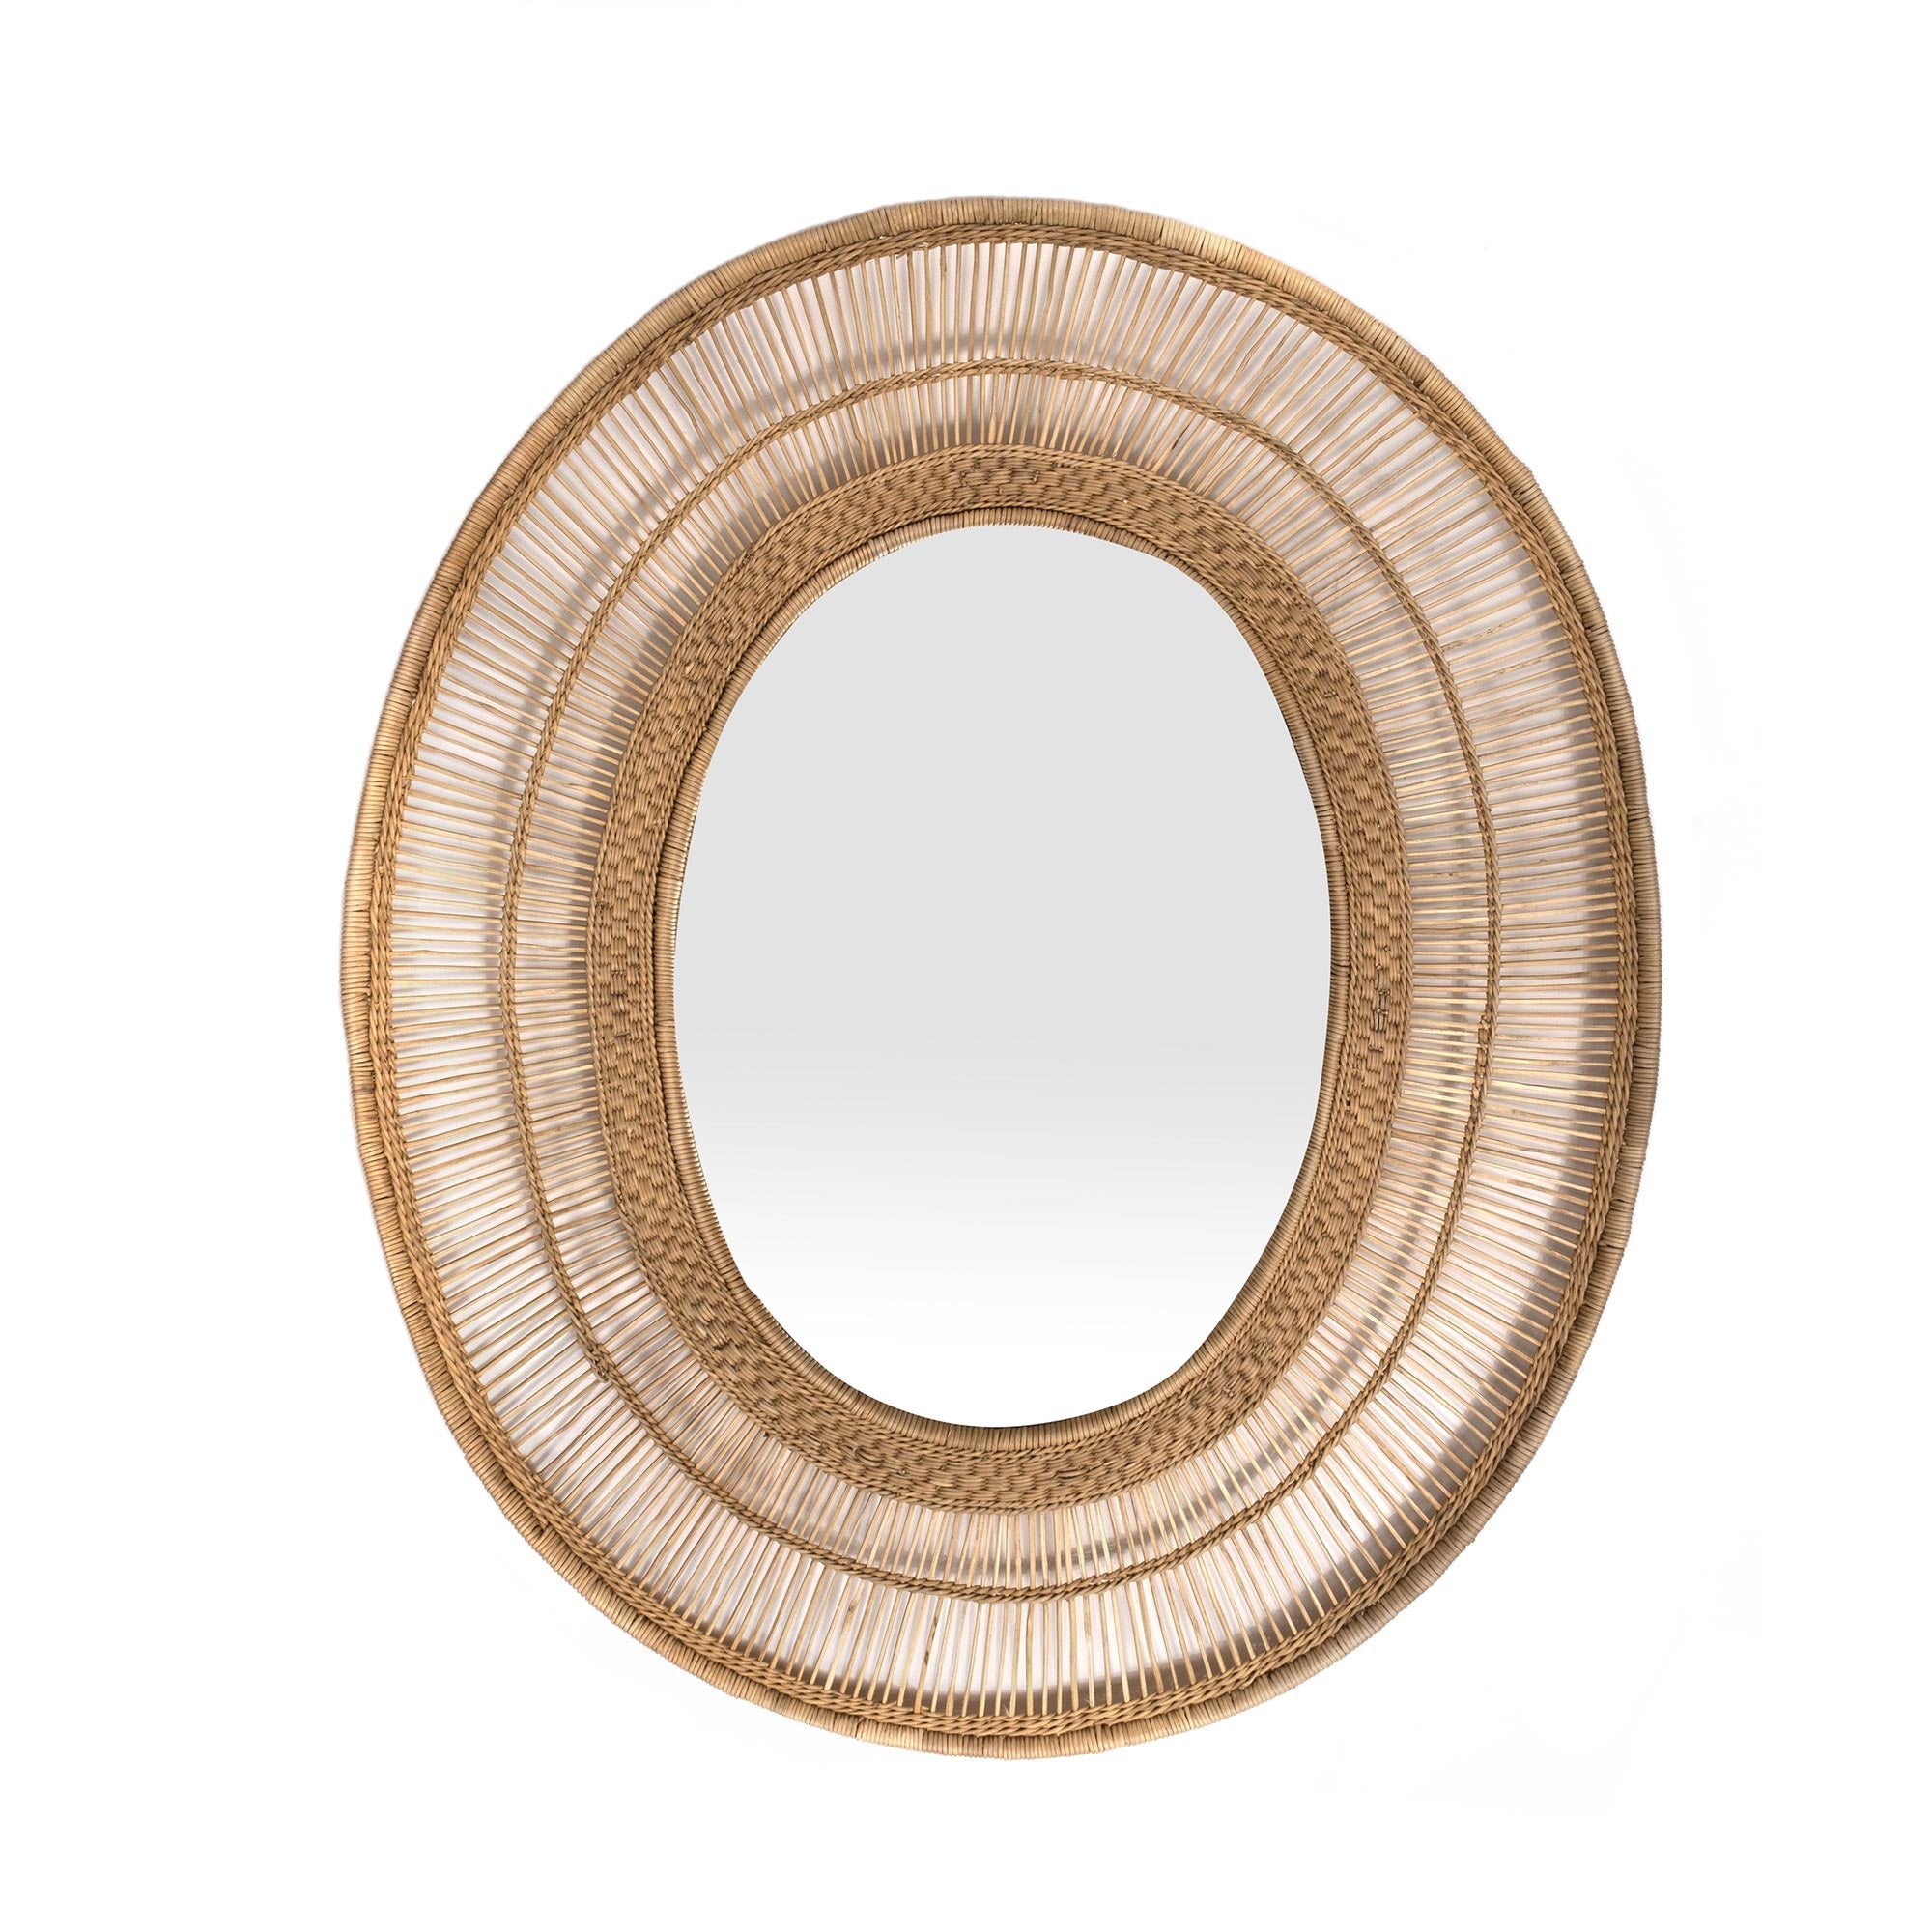 Malawi Mirror - Natural - Large